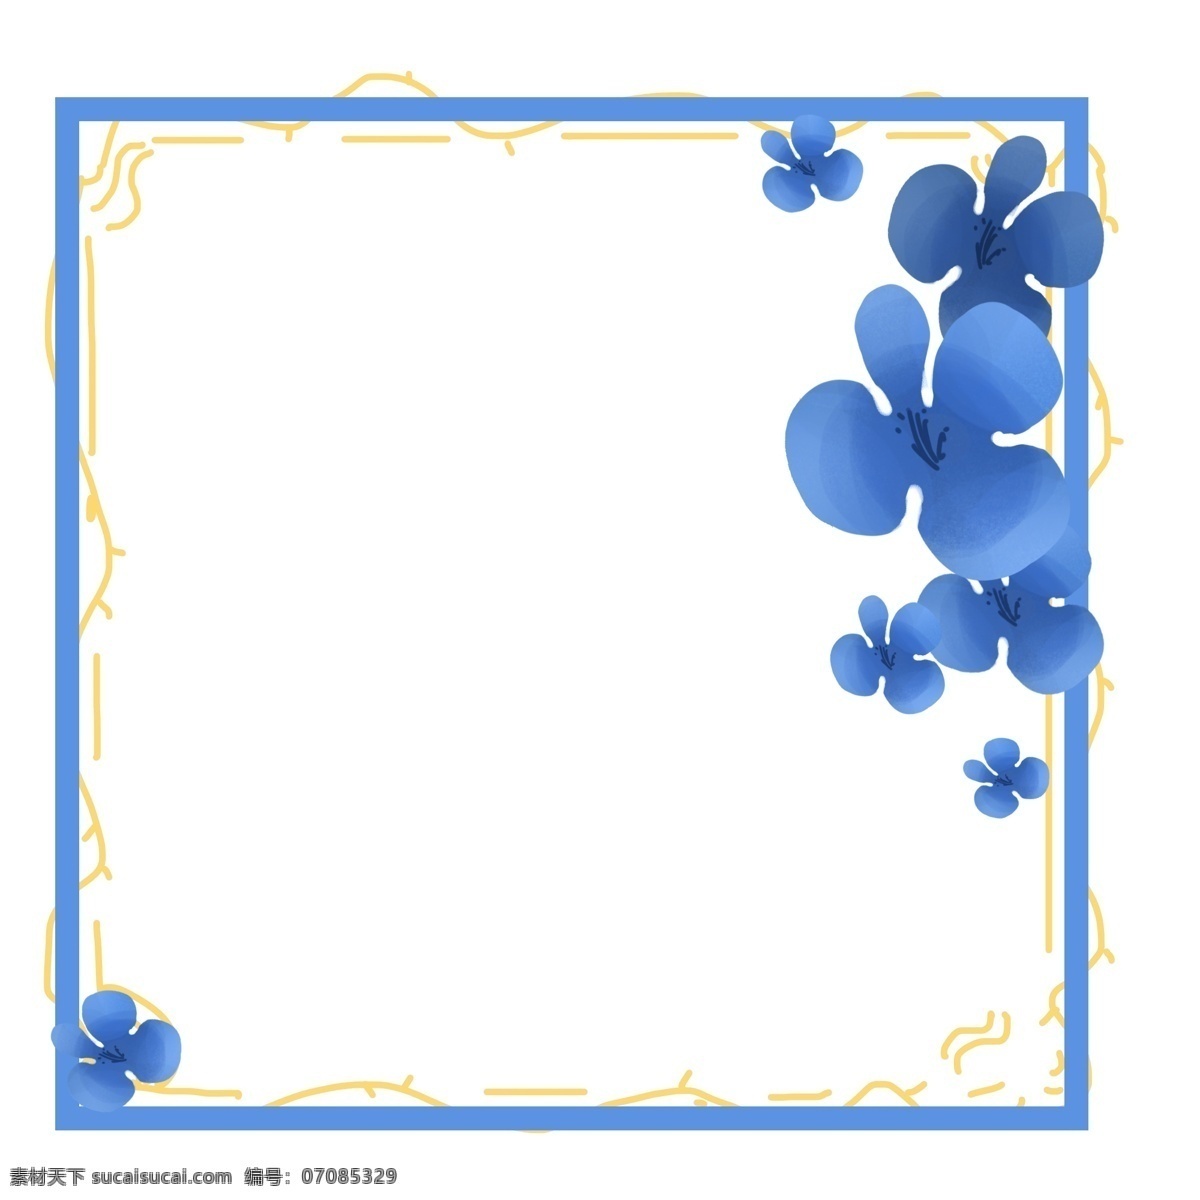 蓝色 绣球 花朵 边框 蓝色绣球花朵 蓝色边框 玉兰花朵朵开 手绘鲜花 春暖花开 可爱 迷人 娇艳欲滴 盛开的花朵